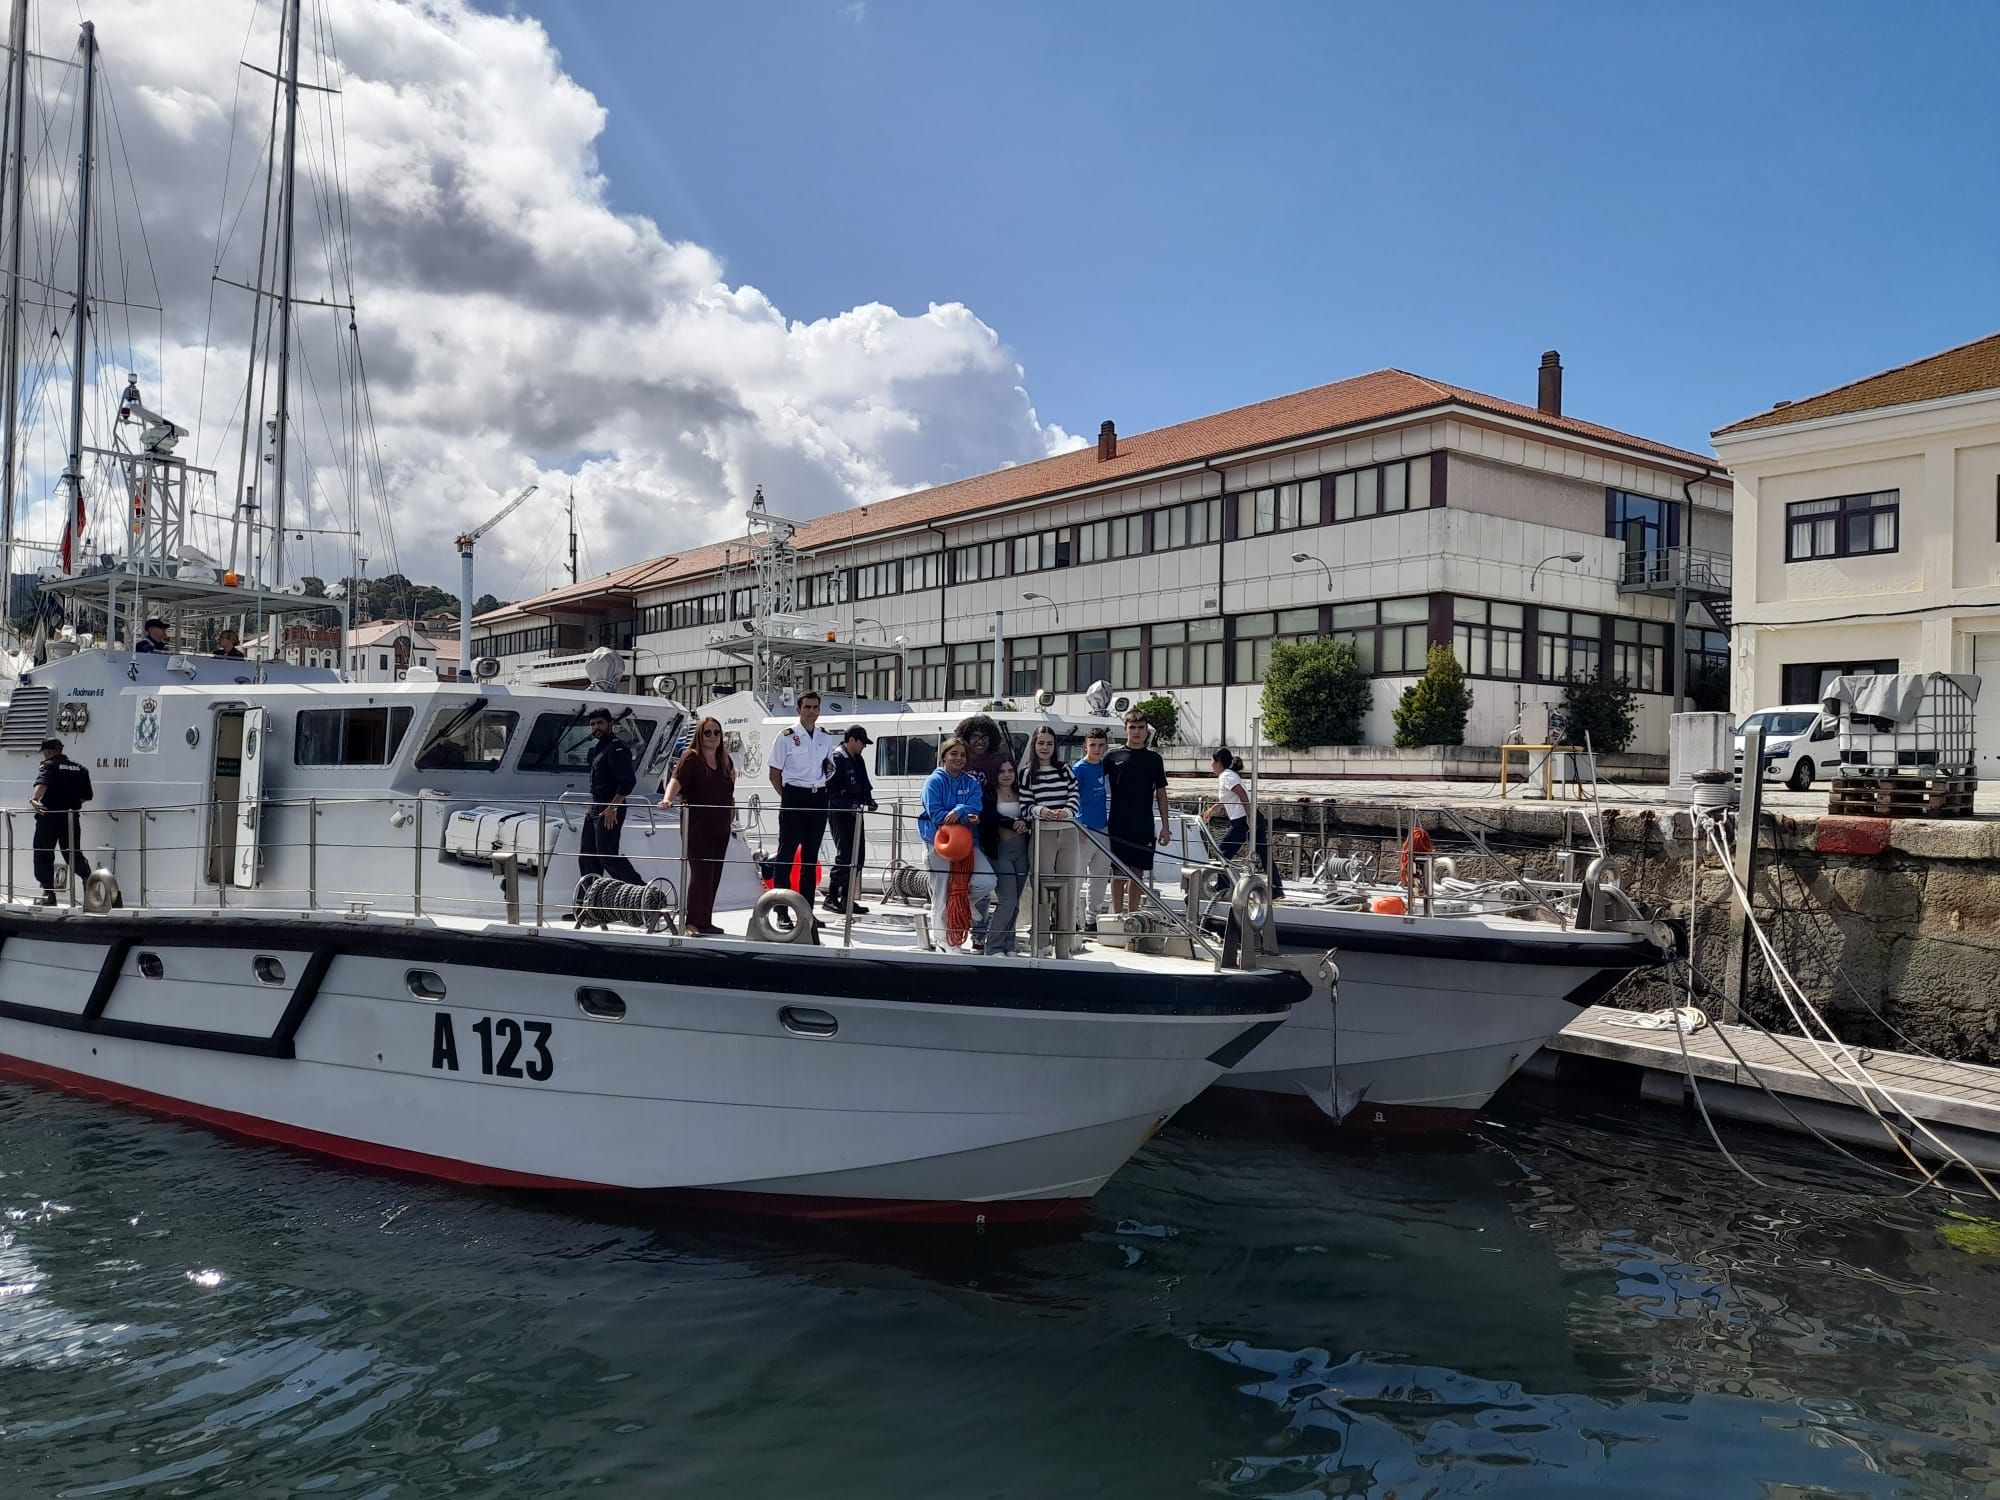 La escuela naval de Marín, abierta para disfrute de 41 alumnos del instituto de Vegadeo